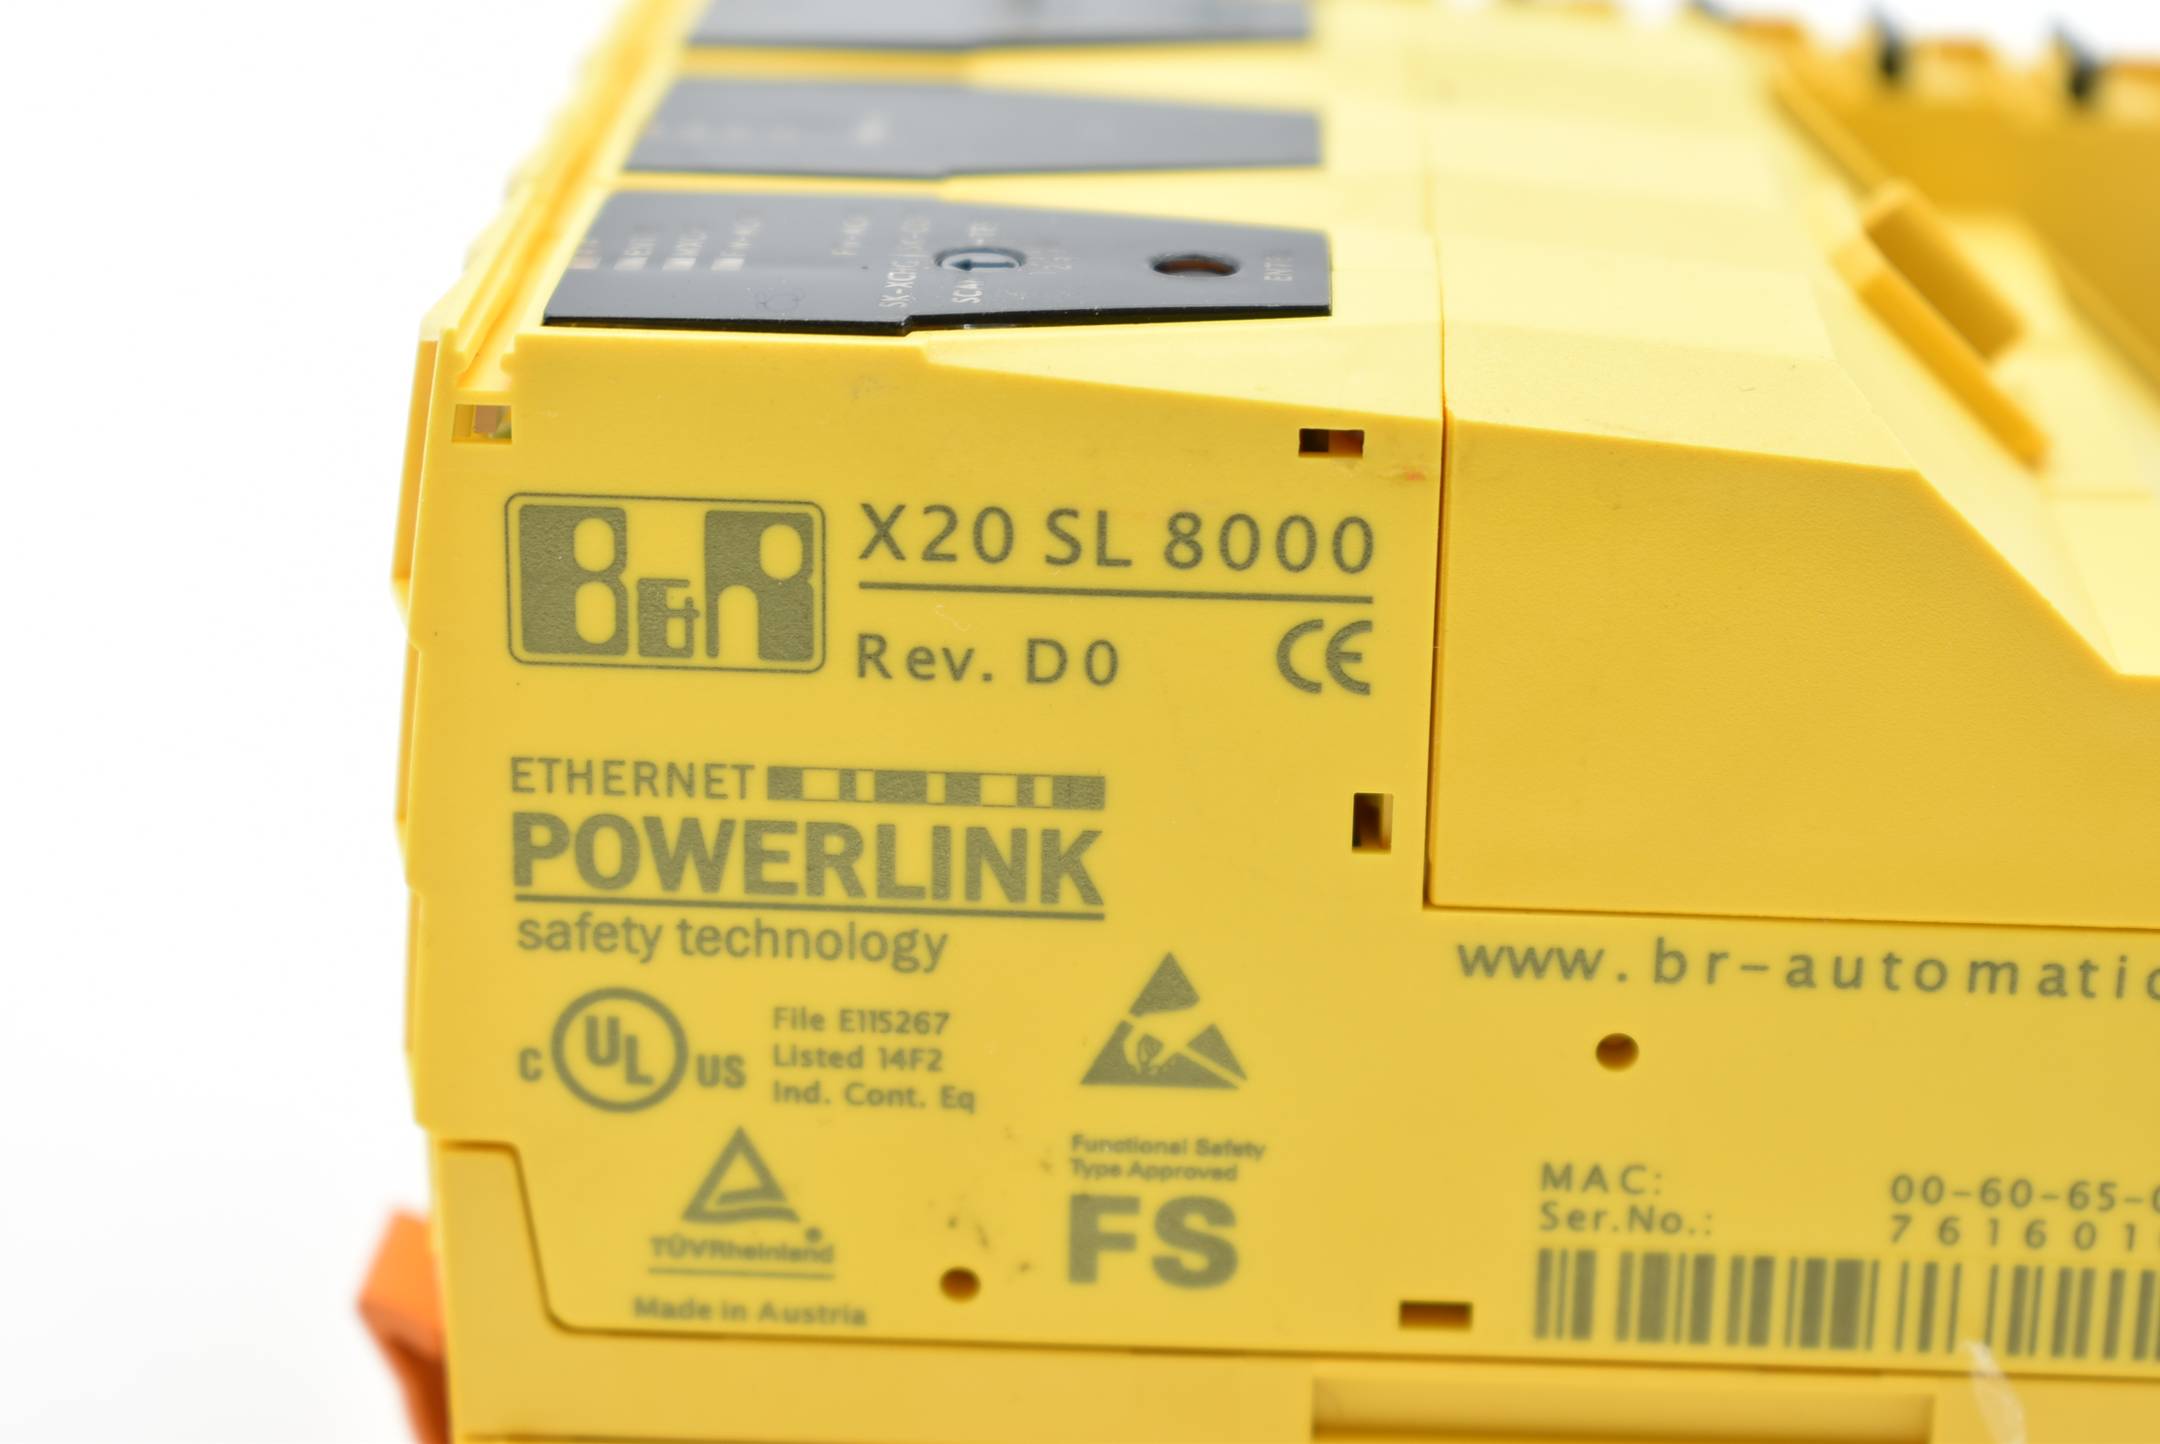 B&R Ethernet Powerlink X20 SL 8000 ( X20SL8000 ) Rev. D0